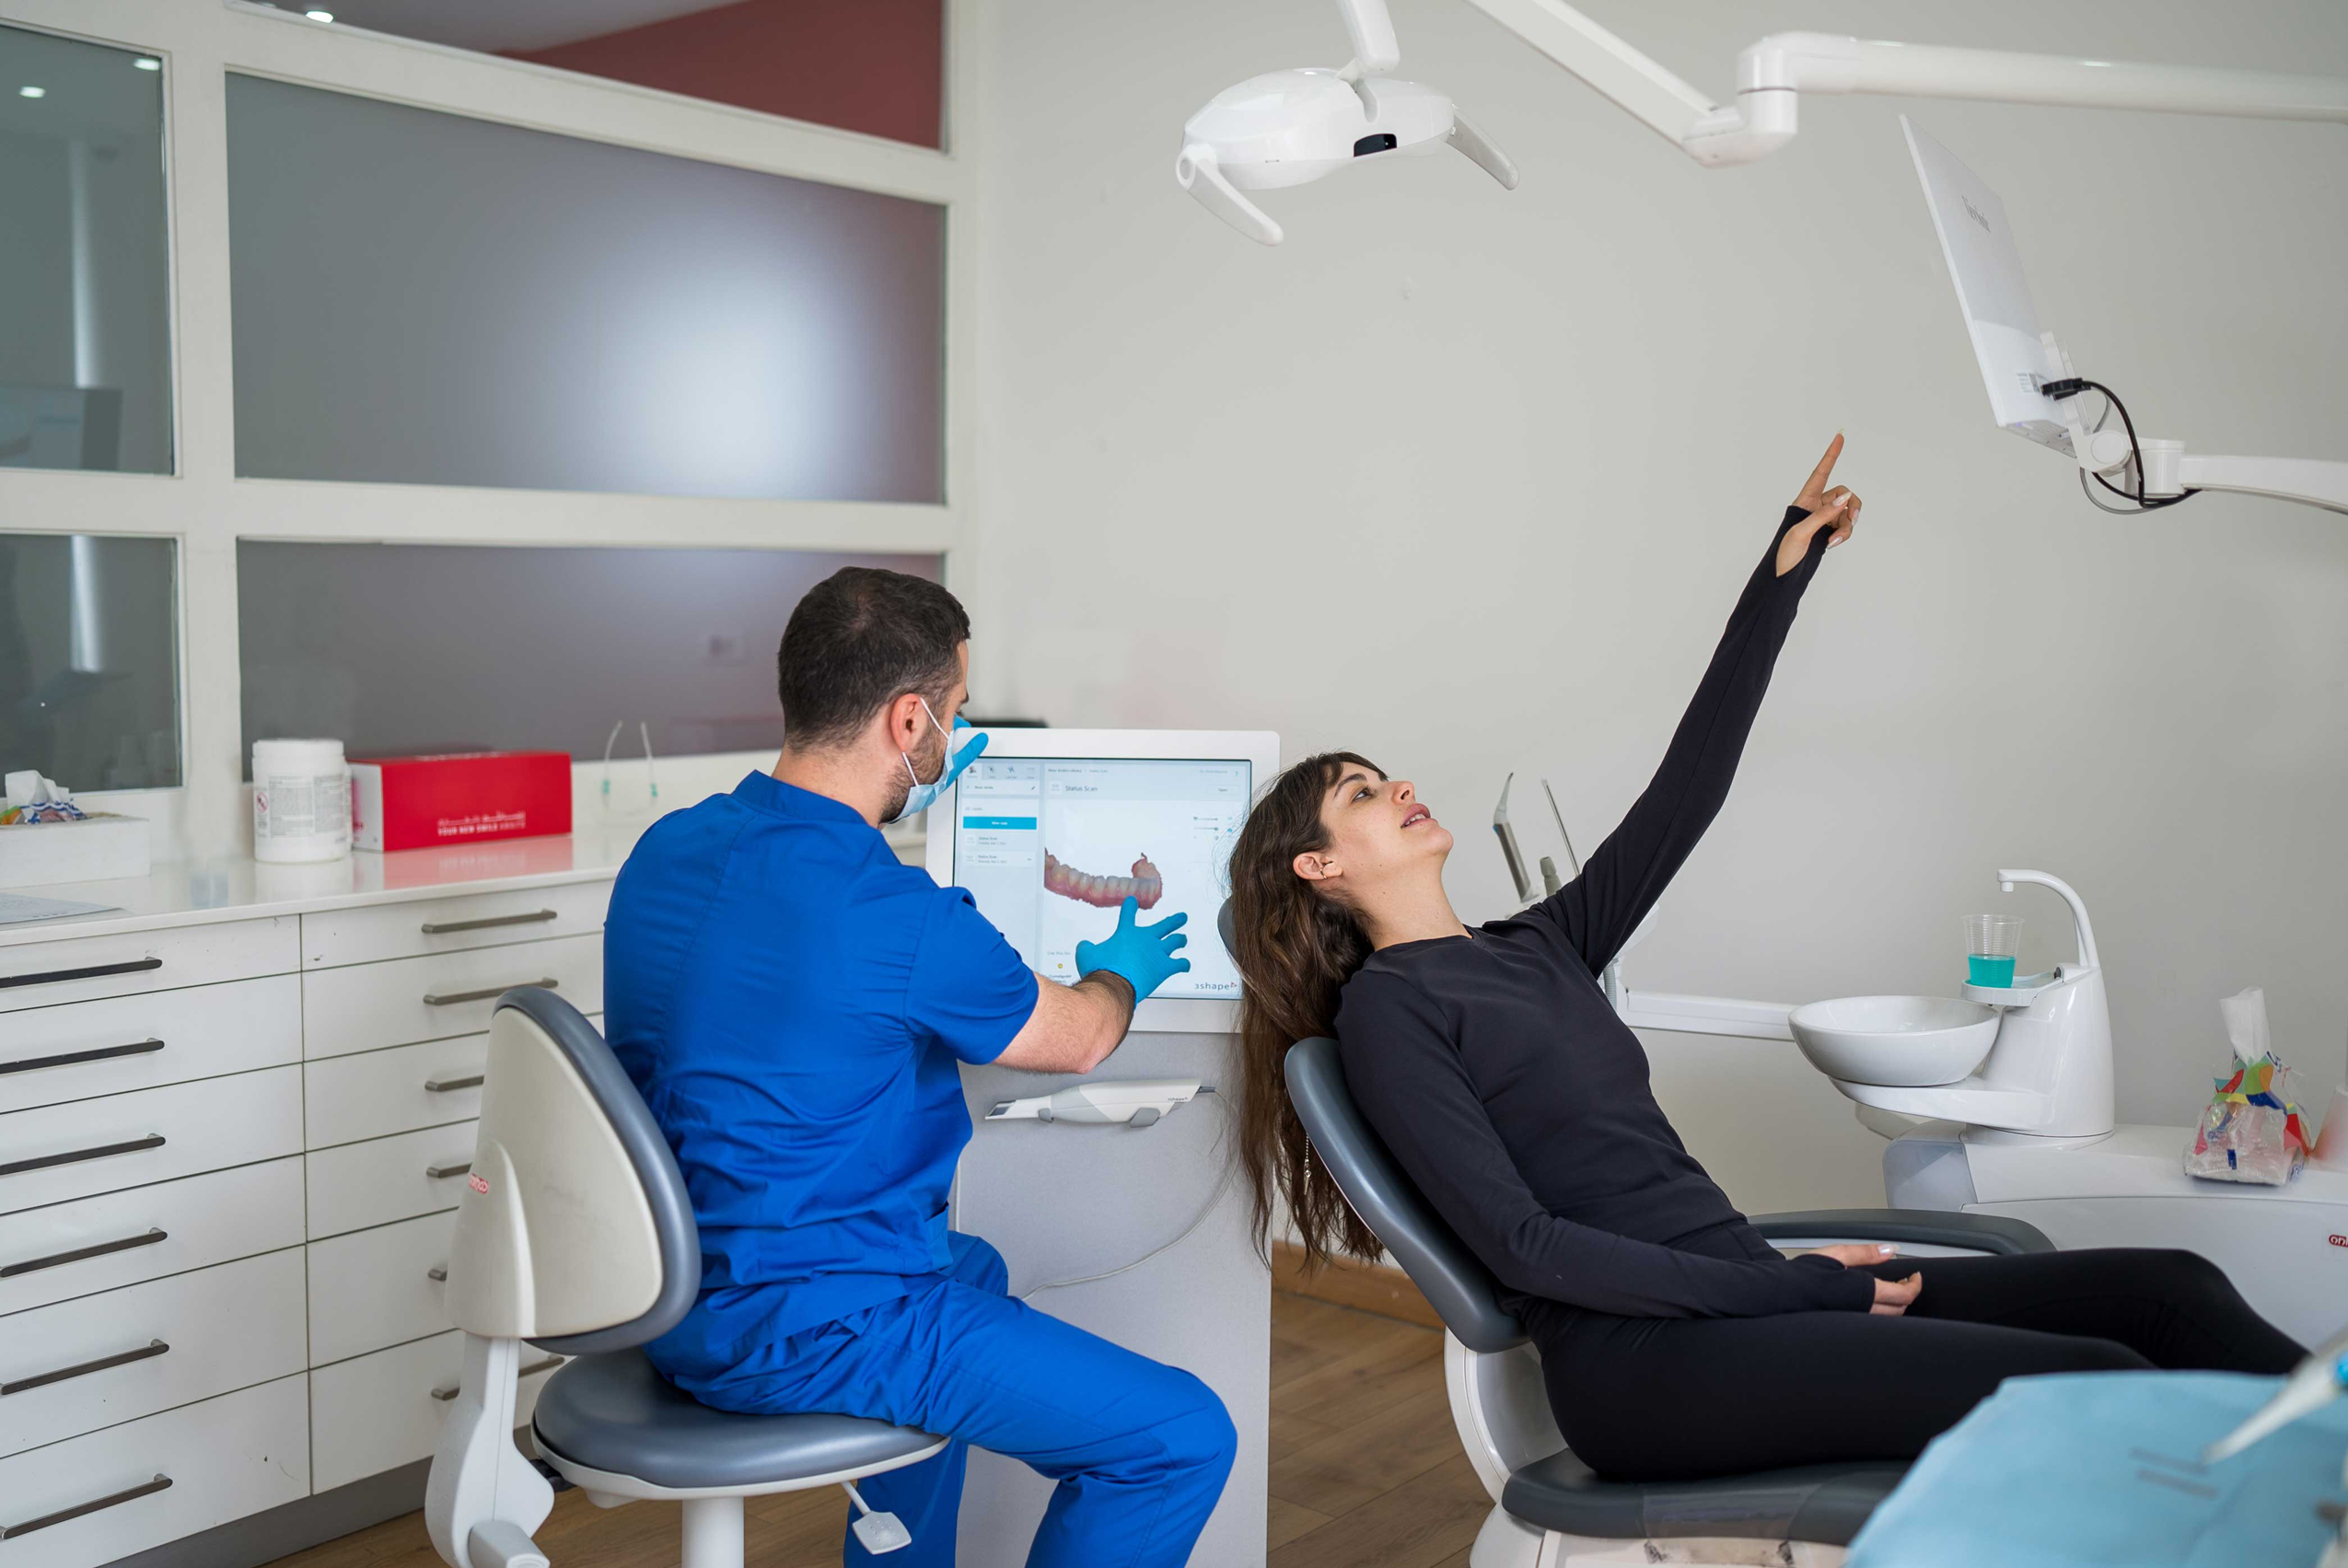 طبيب أسنان يجري مسحاً لأسنان المريض في عيادة متخصصة ويظهر شكل الأسنان على شاشة صغيرة في الخلف